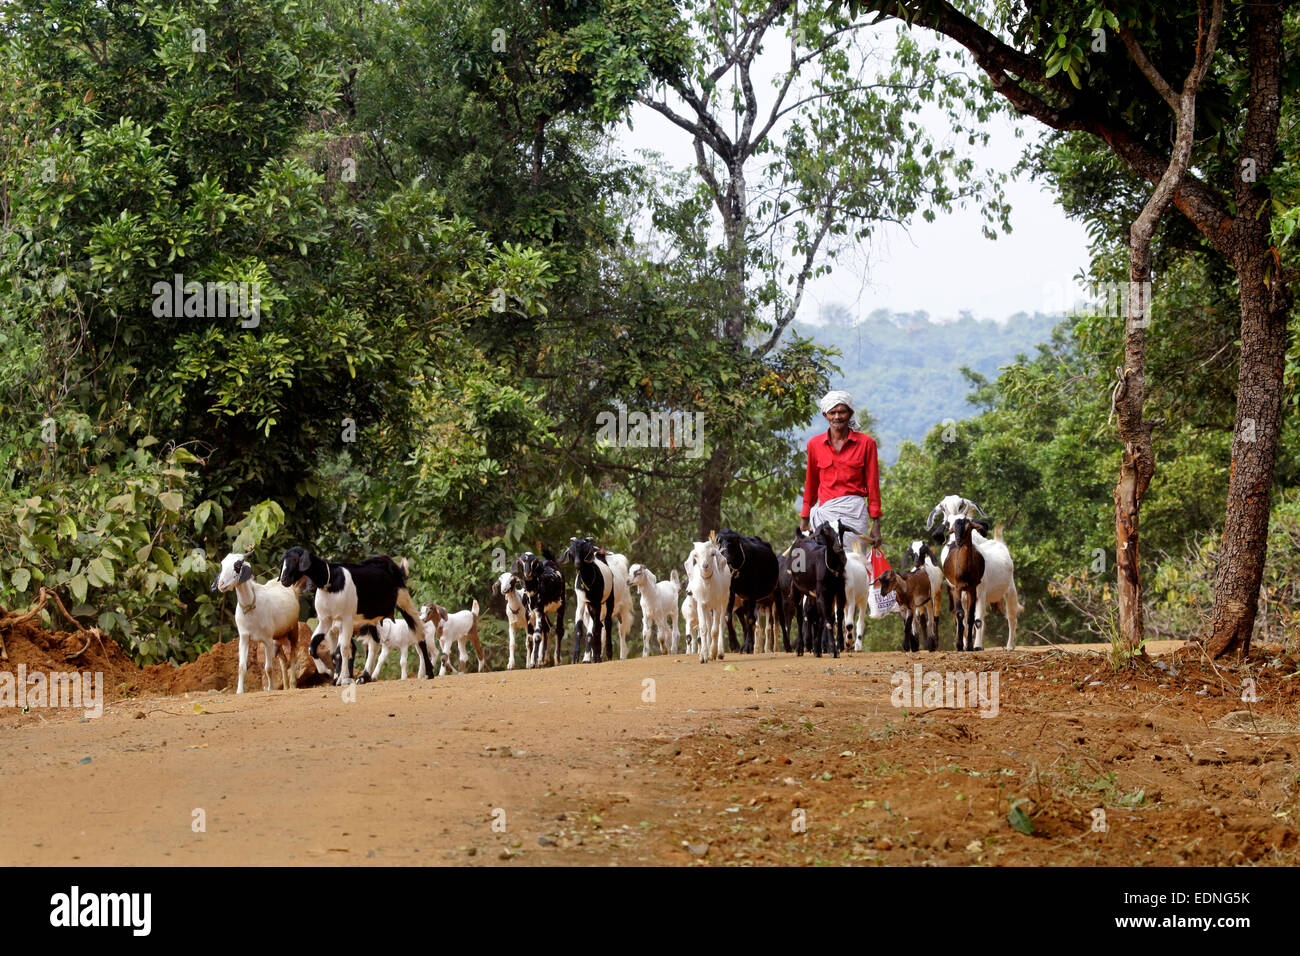 Indische Ziege Bauer mit seinen Ziegen in einem Dorf, palakad, Kerala, Indien, Ziege Bauer, indische Landwirtschaft, Kalender Fotos Stockfoto